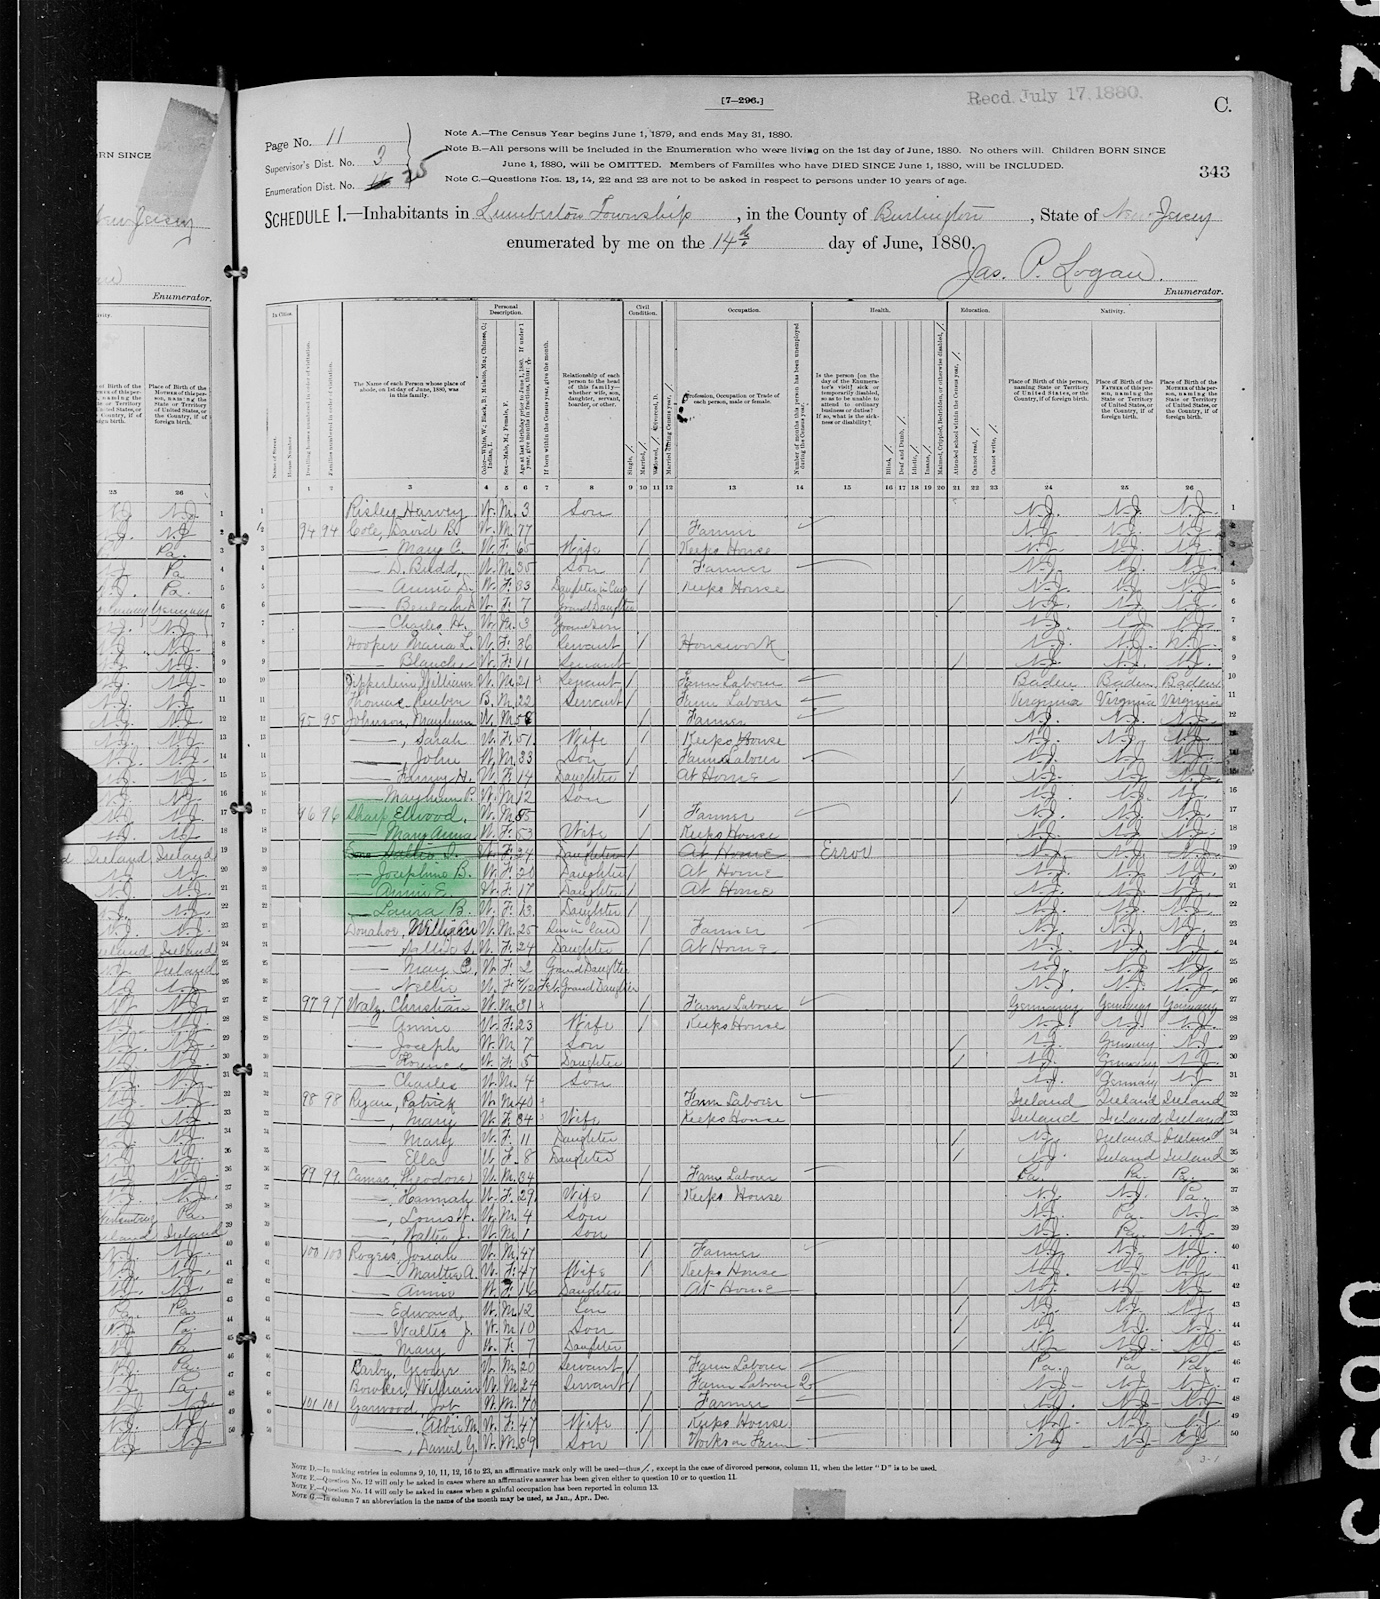 Census Sharp - 1880 United States Federal Census